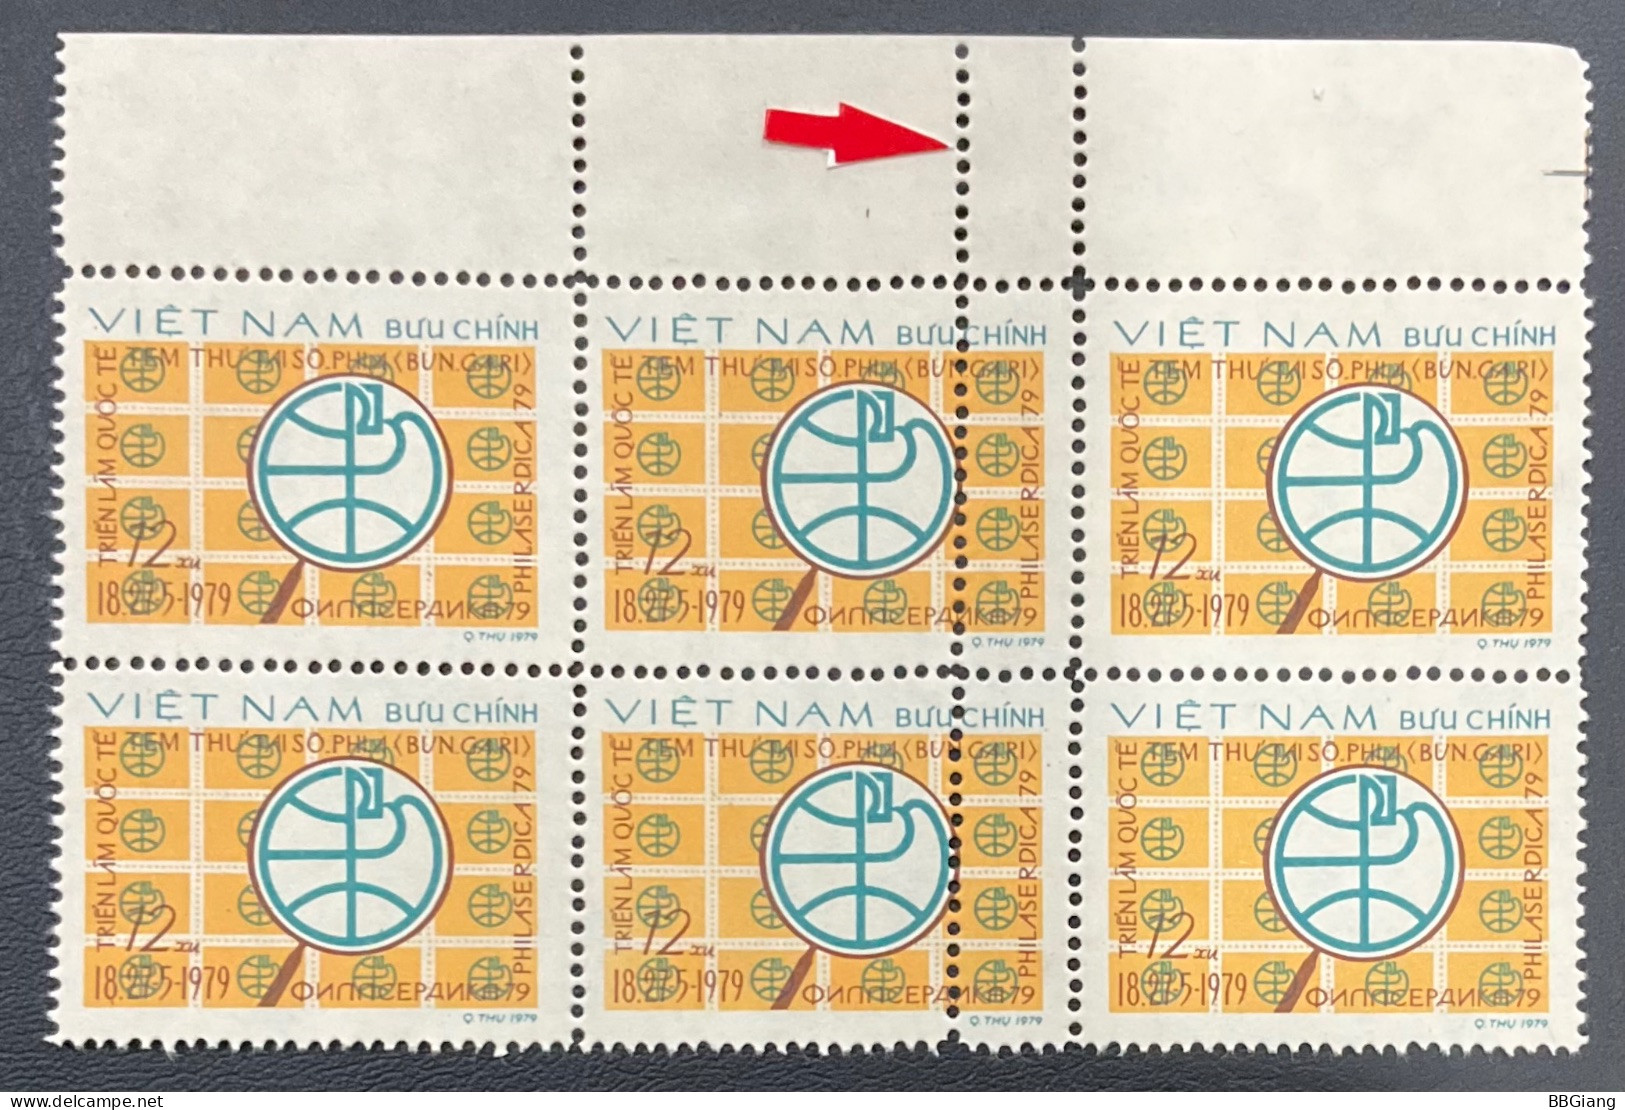 Vietnam Error Stamps, Double Perforate. - Vietnam